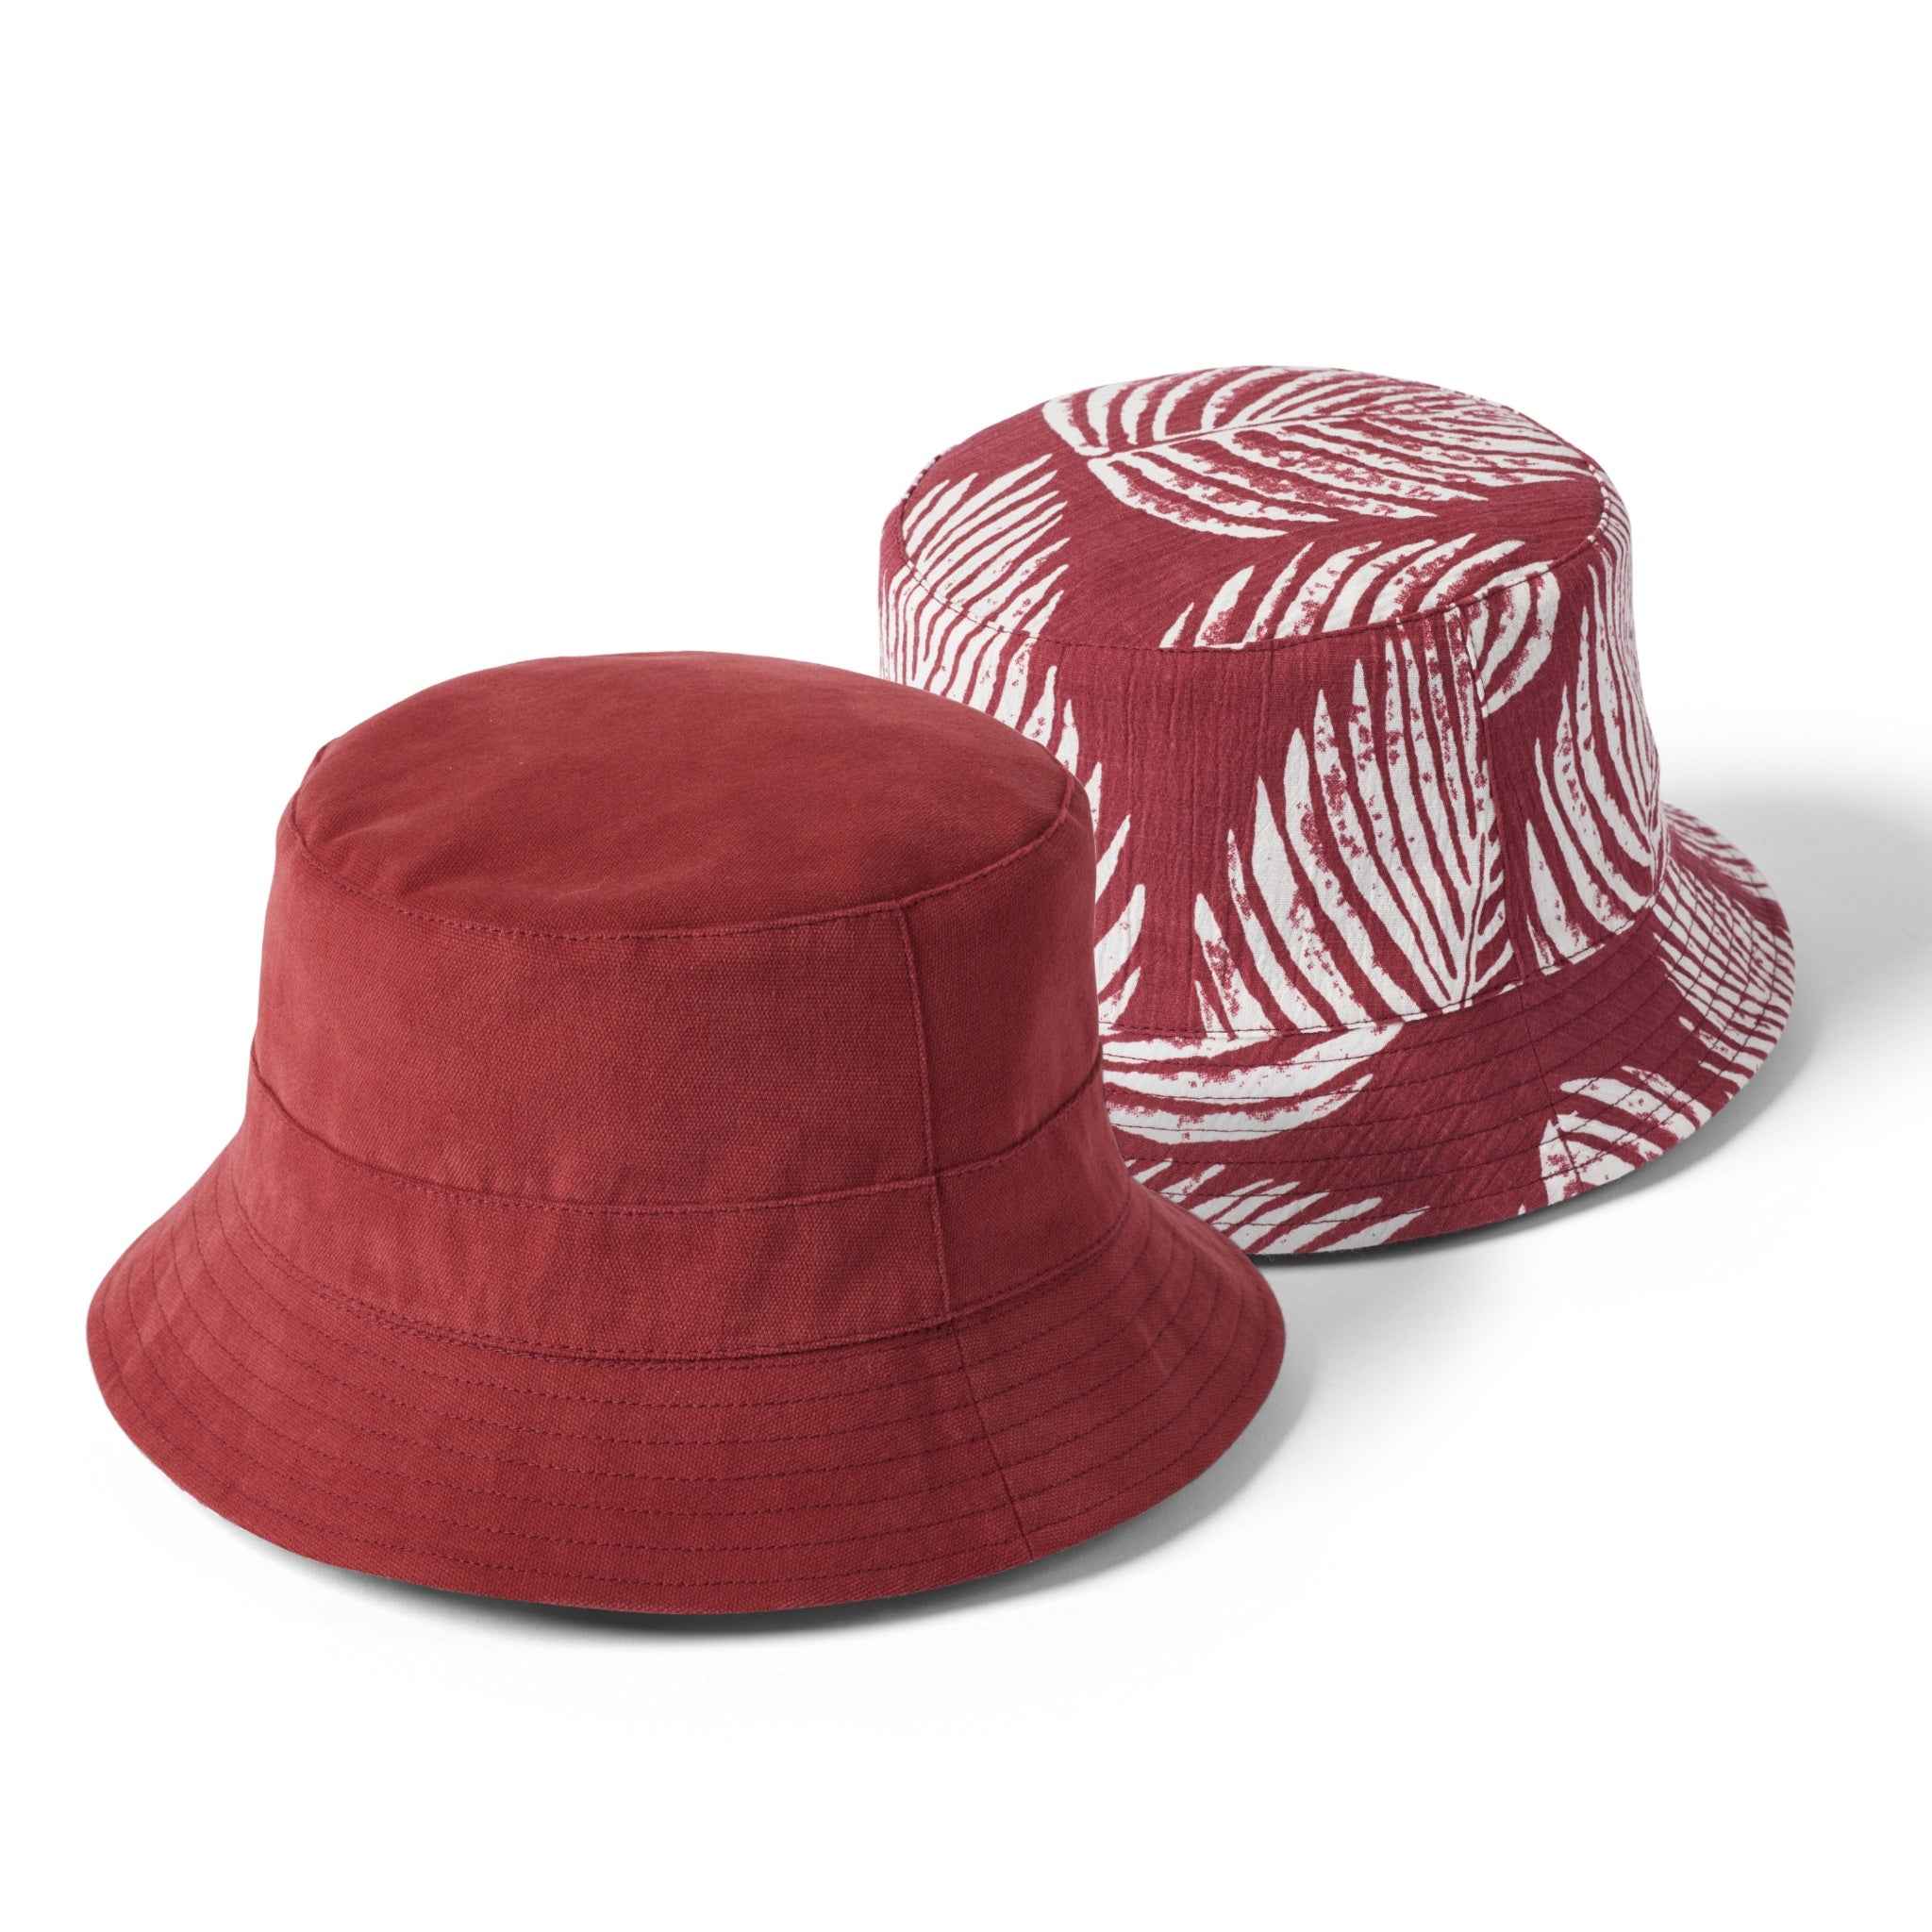 The Hat Shop Failsworth 100% Cotton Reversible Bucket Hat Brick